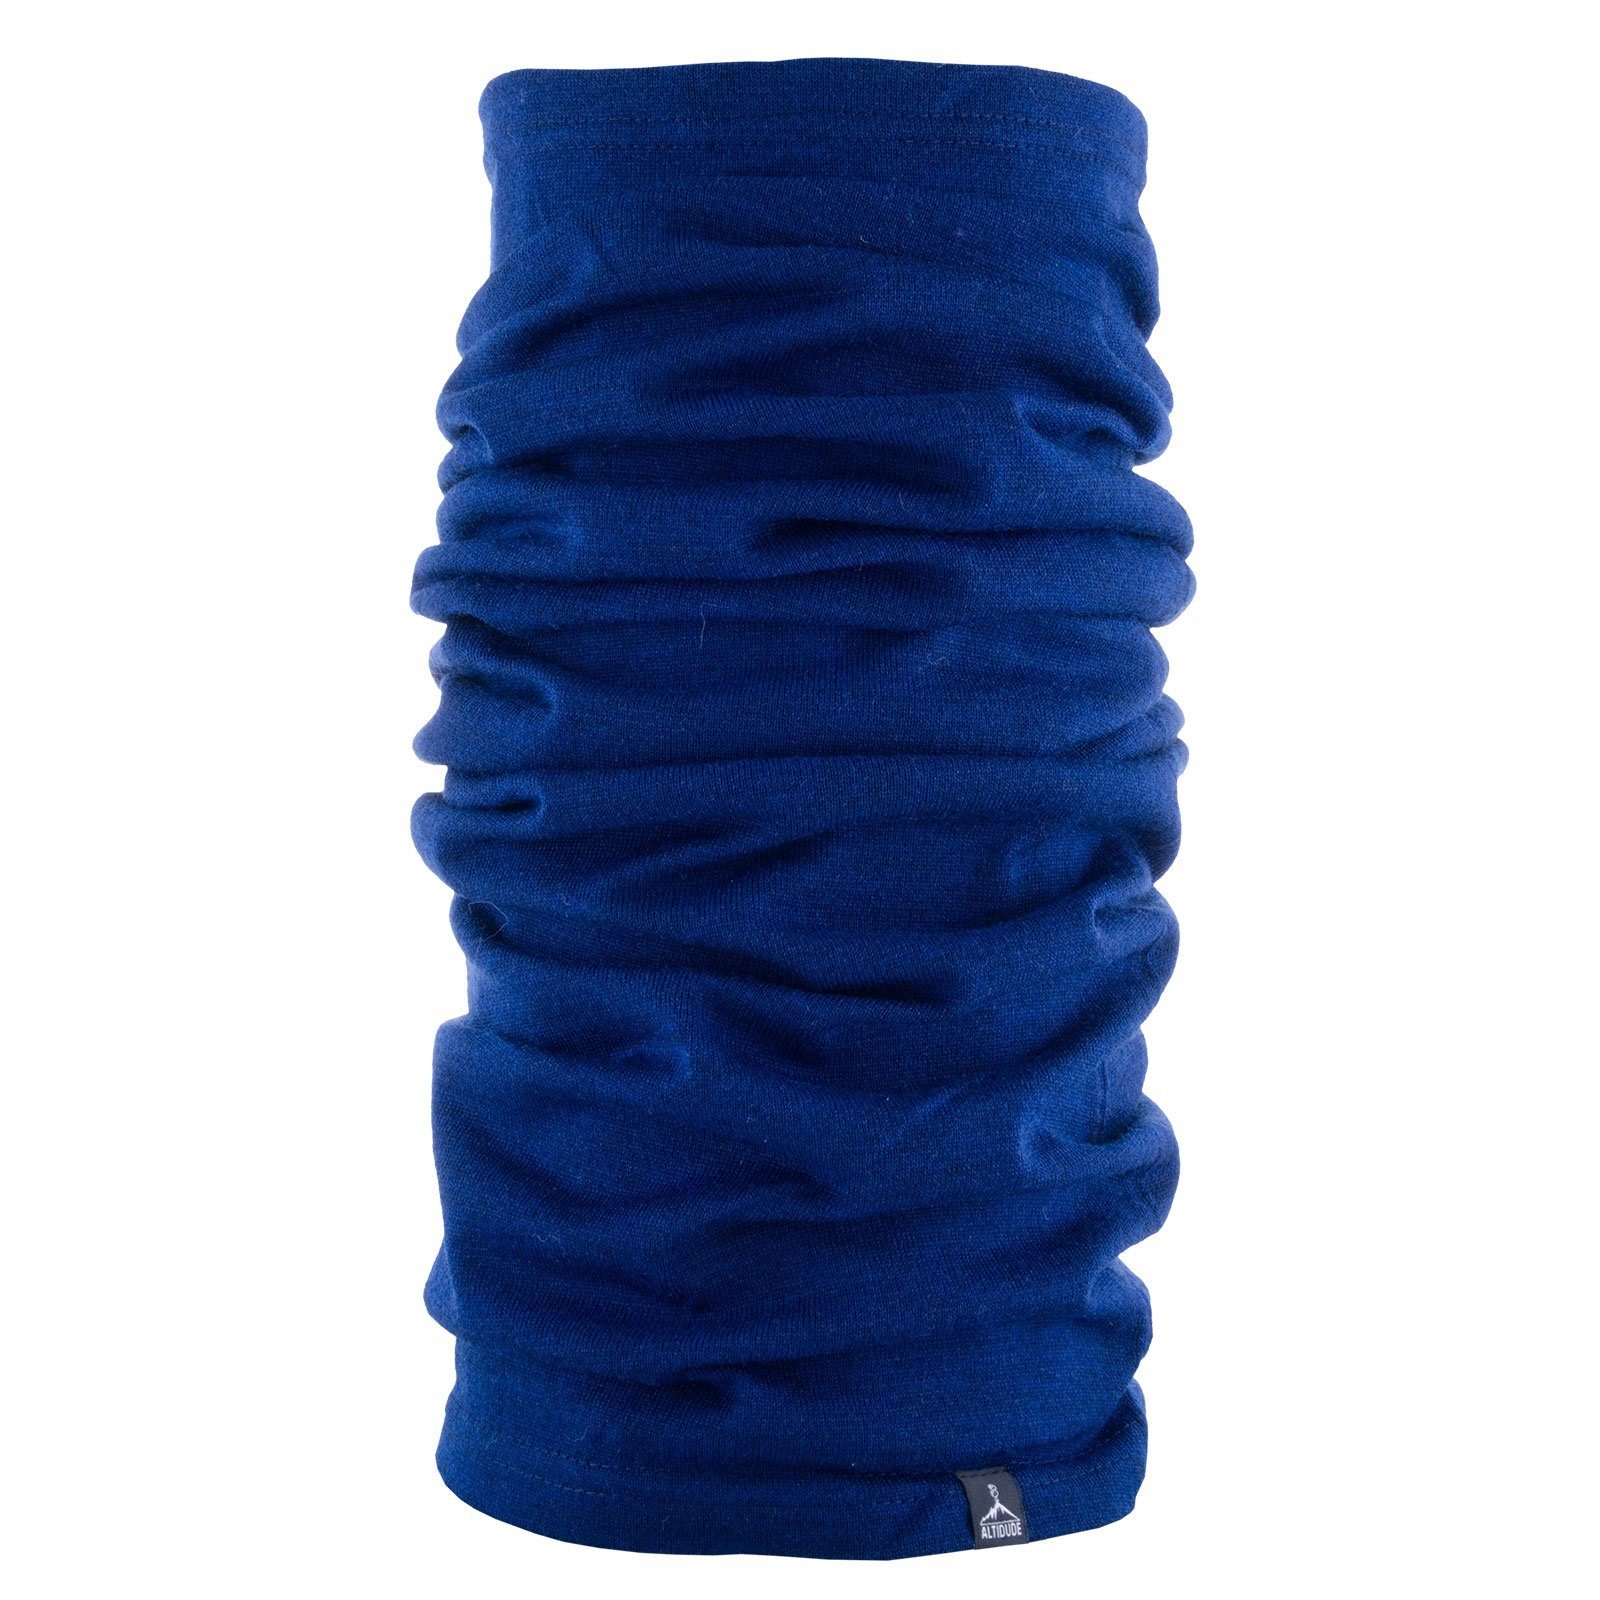 Loop Single 100% Halstuch, ALTIDUDE Rund Schlauchtuch Blau Wollschal Multitube Schal Merinowolle